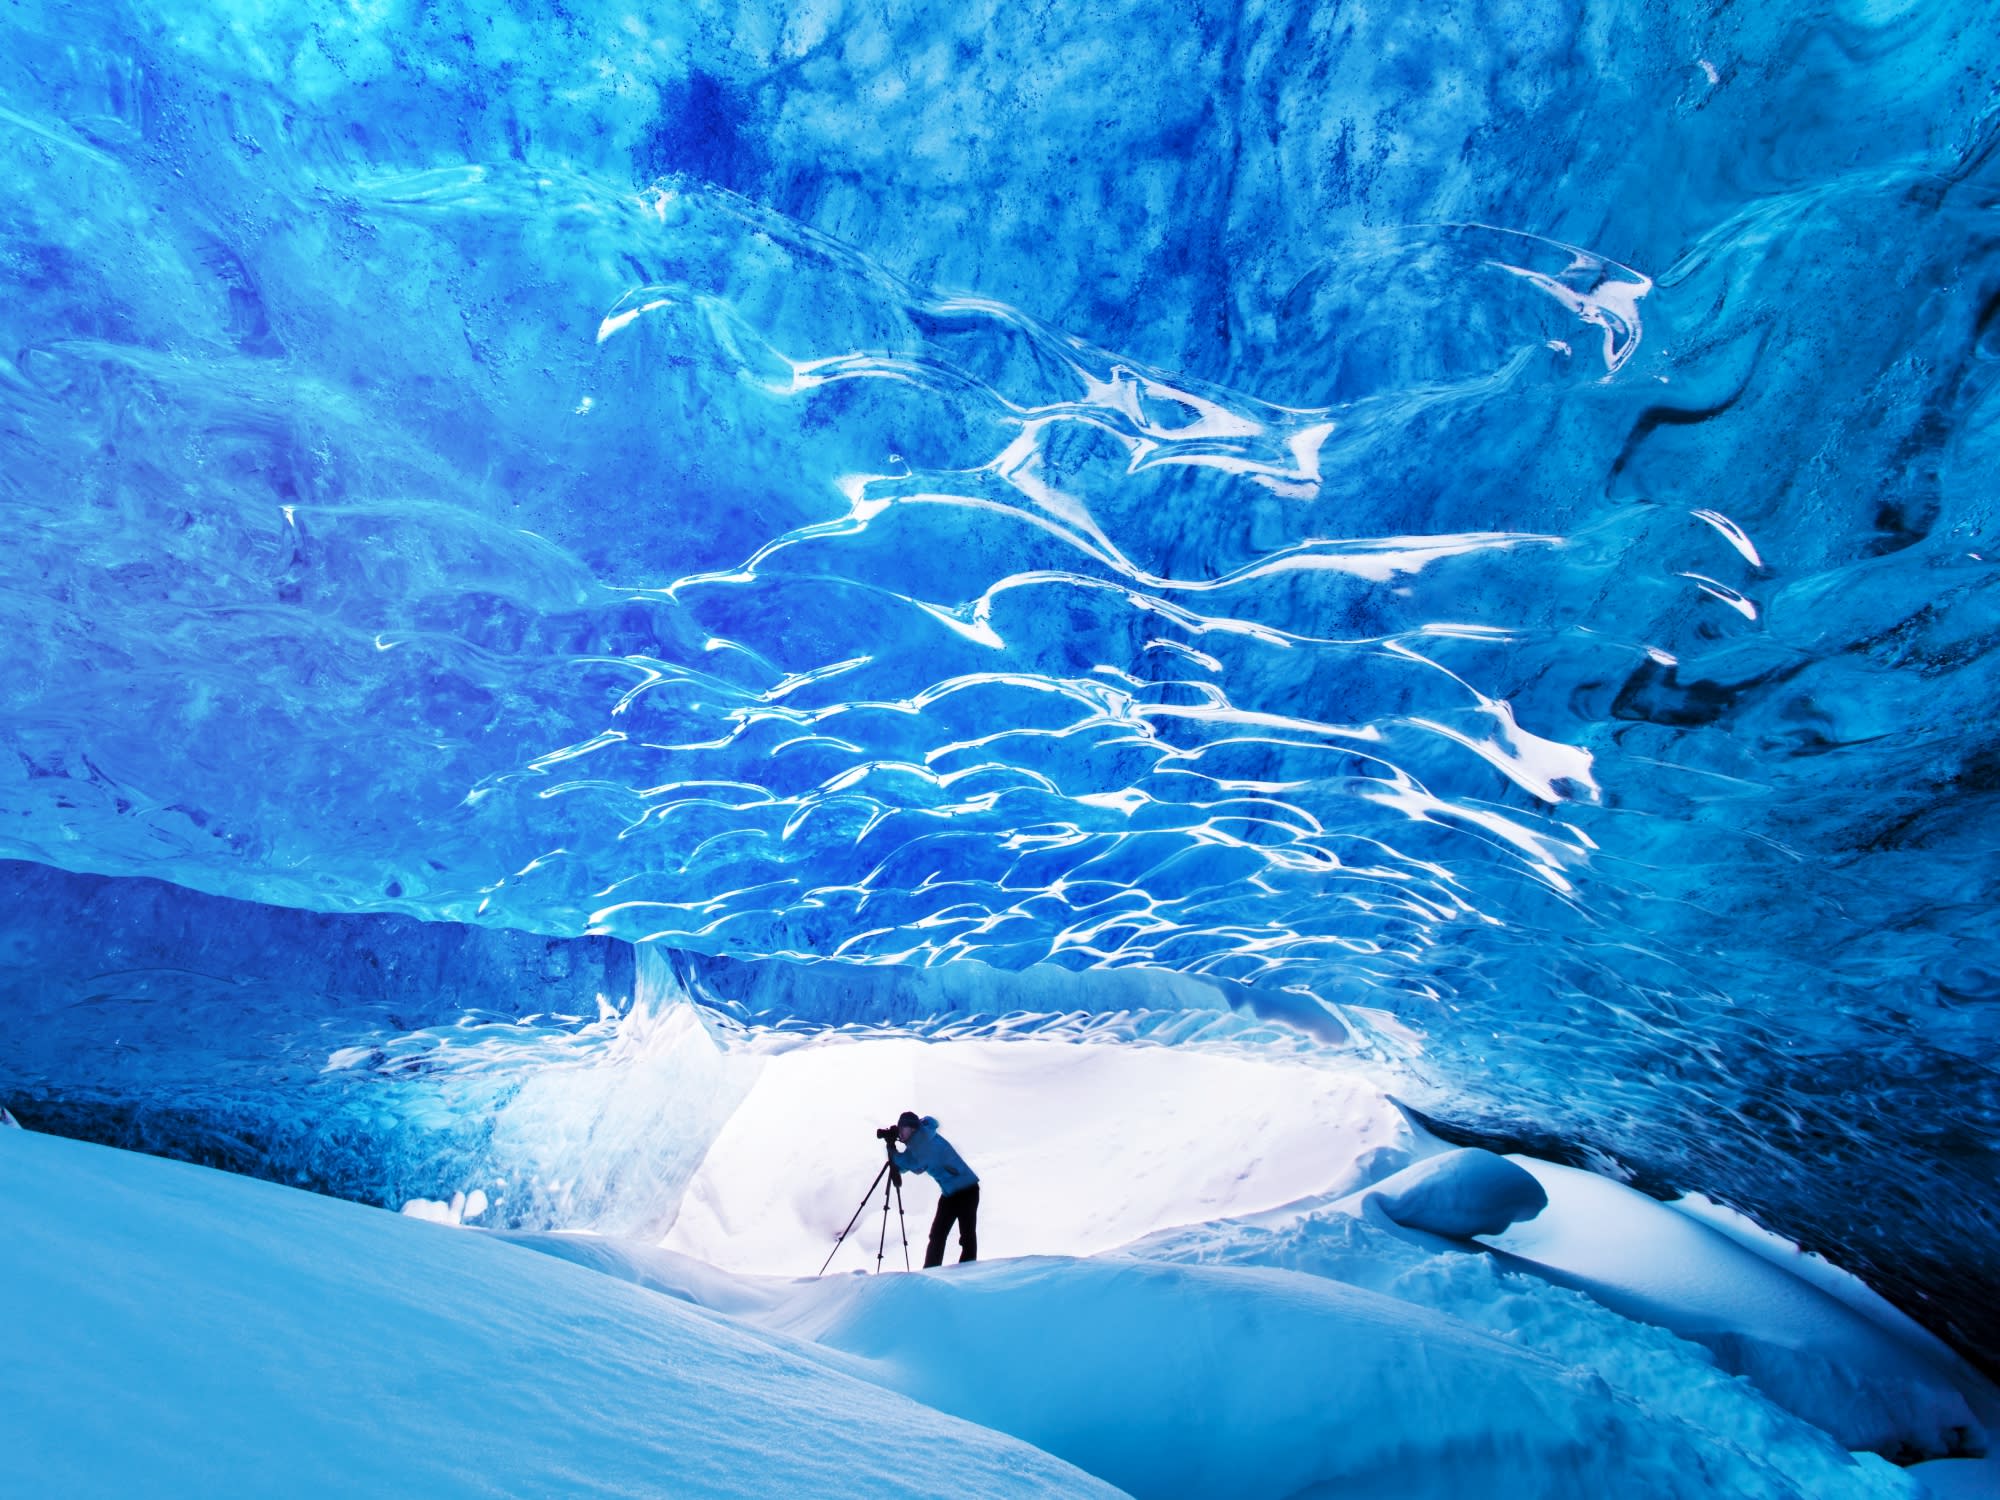 アイスランド西部 南部 奇跡の絶景 4泊5日周遊ツアー スナイフェルスネス半島 ゴールデンサークル 氷の洞窟 10月 4月 英語 レイキャヴィーク発 アイスランド アイスランド 旅行の観光 オプショナルツアー予約 Veltra ベルトラ